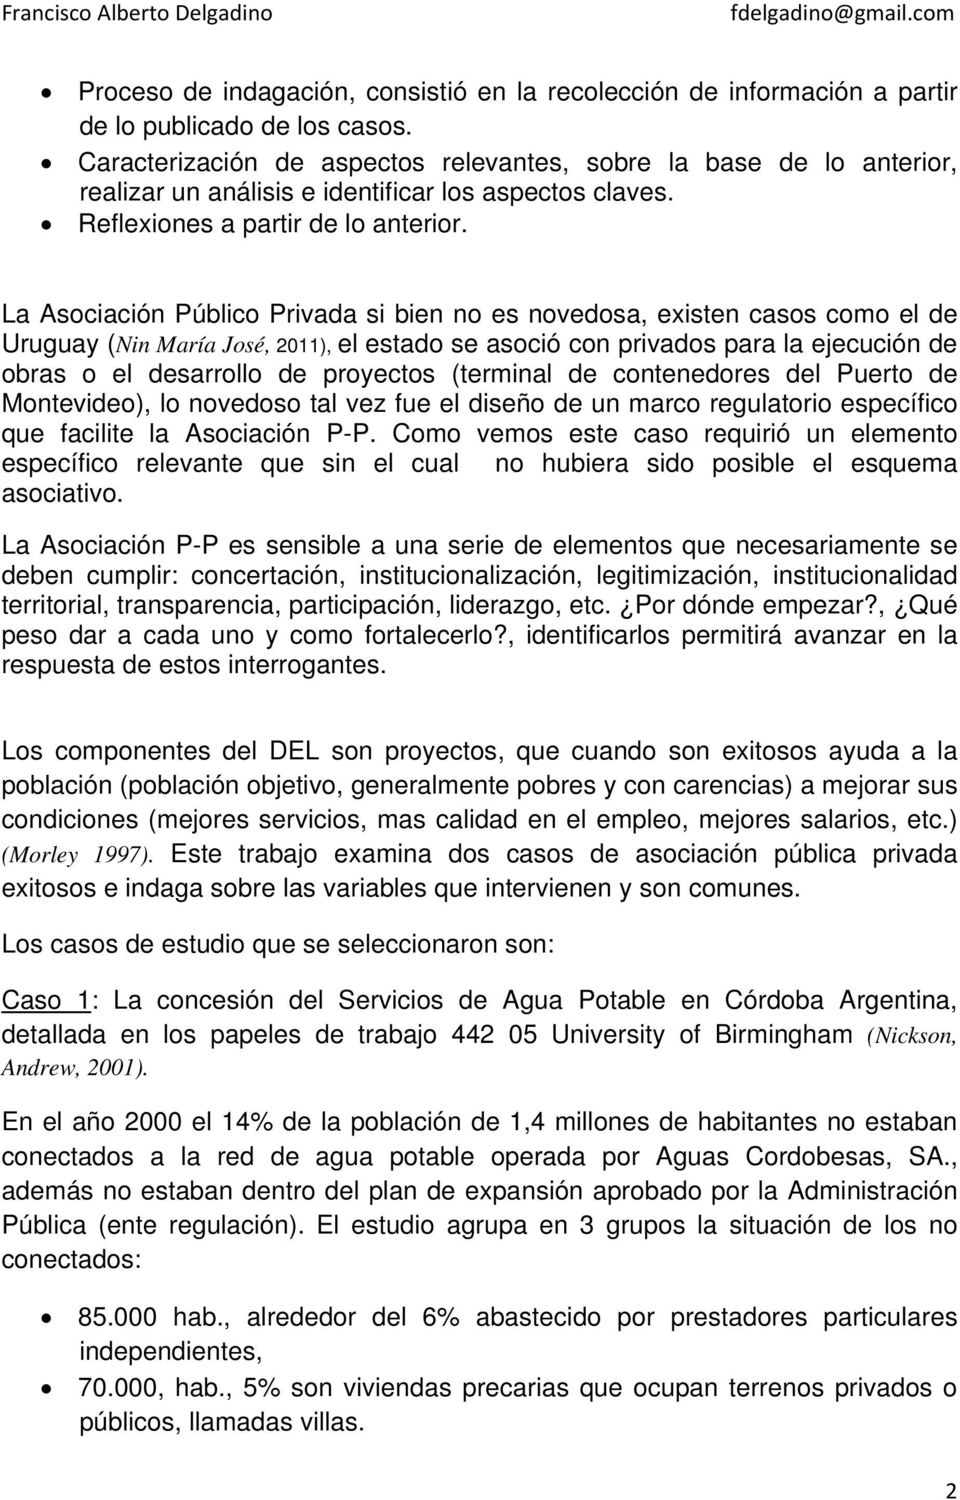 La Asociación Público Privada si bien no es novedosa, existen casos como el de Uruguay (Nin María José, 2011), el estado se asoció con privados para la ejecución de obras o el desarrollo de proyectos